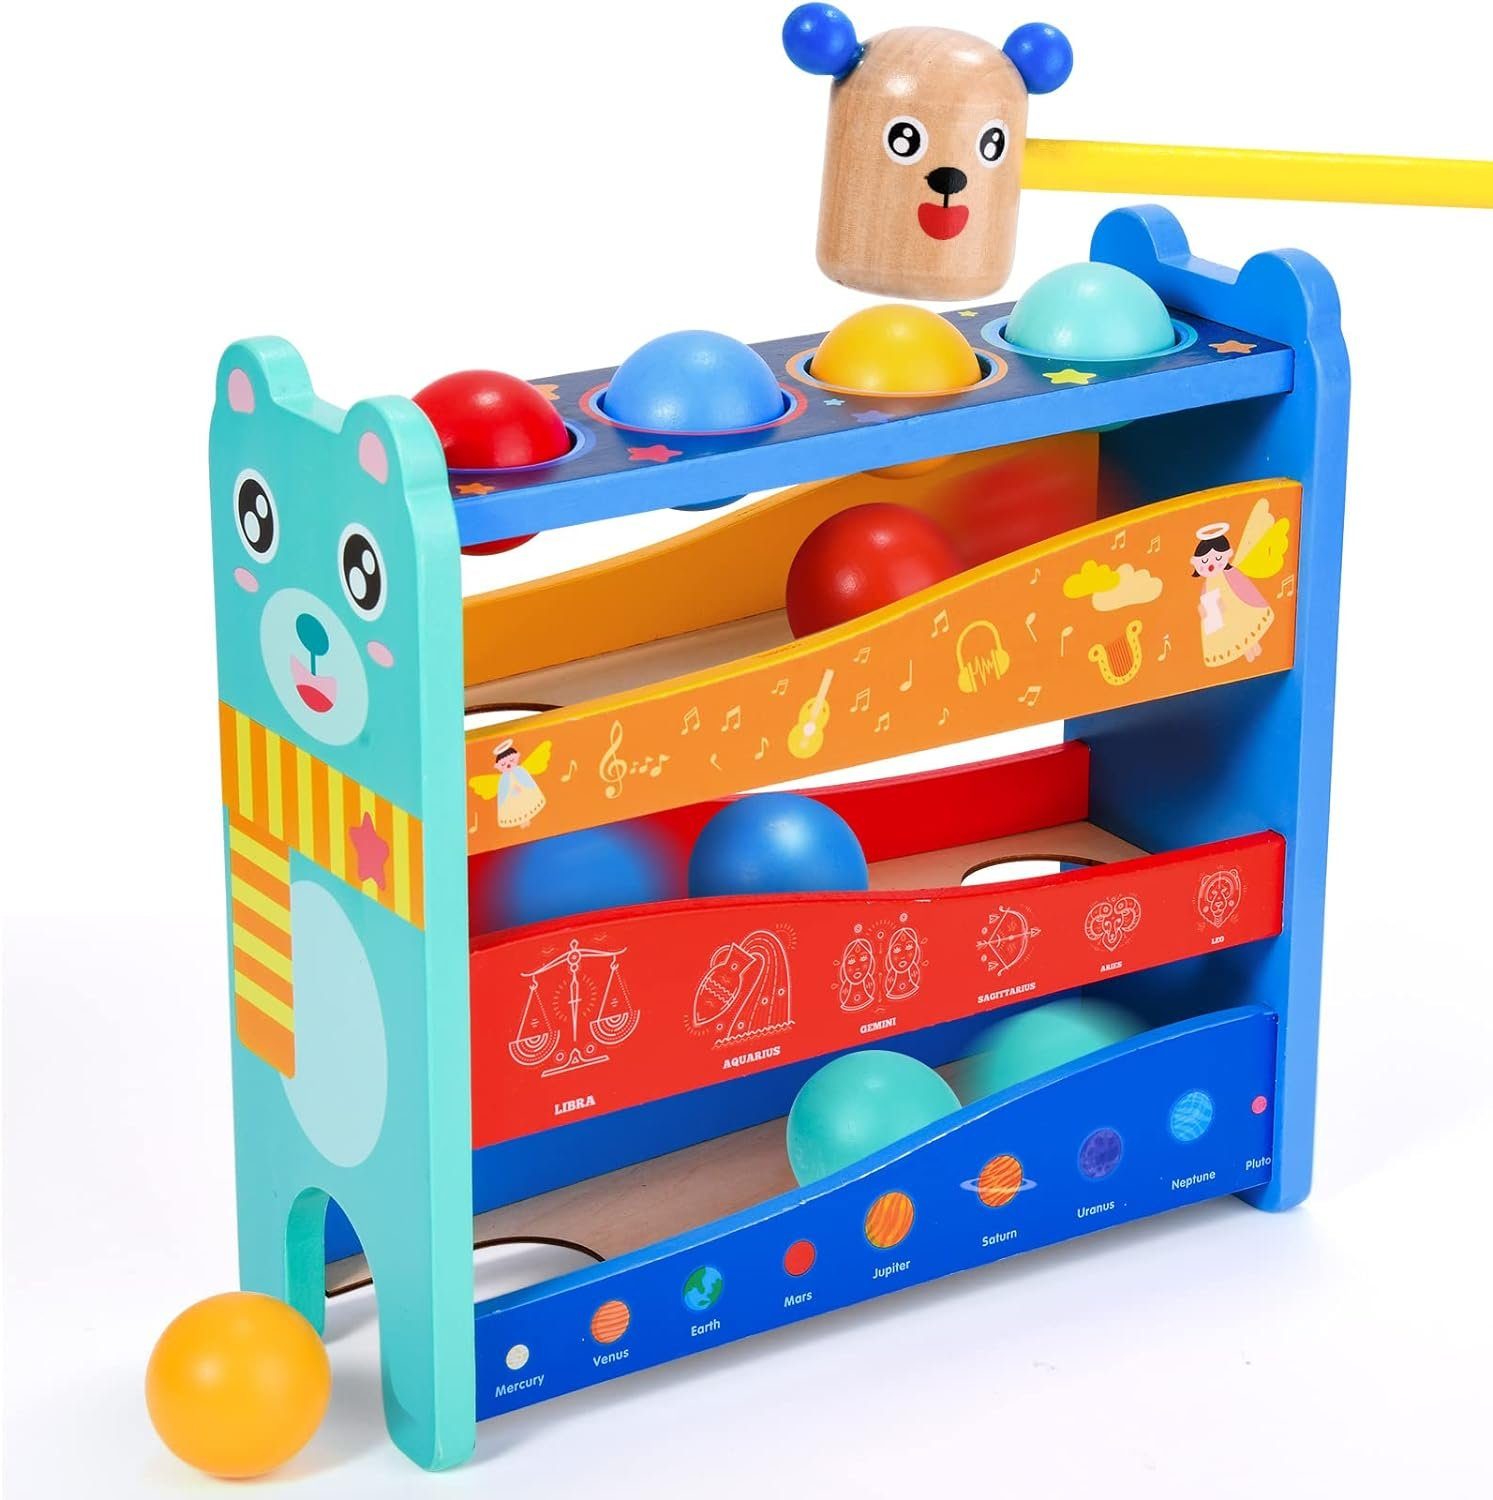 Atoylink Spielcenter Holzhammer-Spaß: Montessori-Spielzeug für Kinder, (Montessori Motorik Іграшки Set), fördert spielerisch Formerkennung und motorische Fähigkeiten.